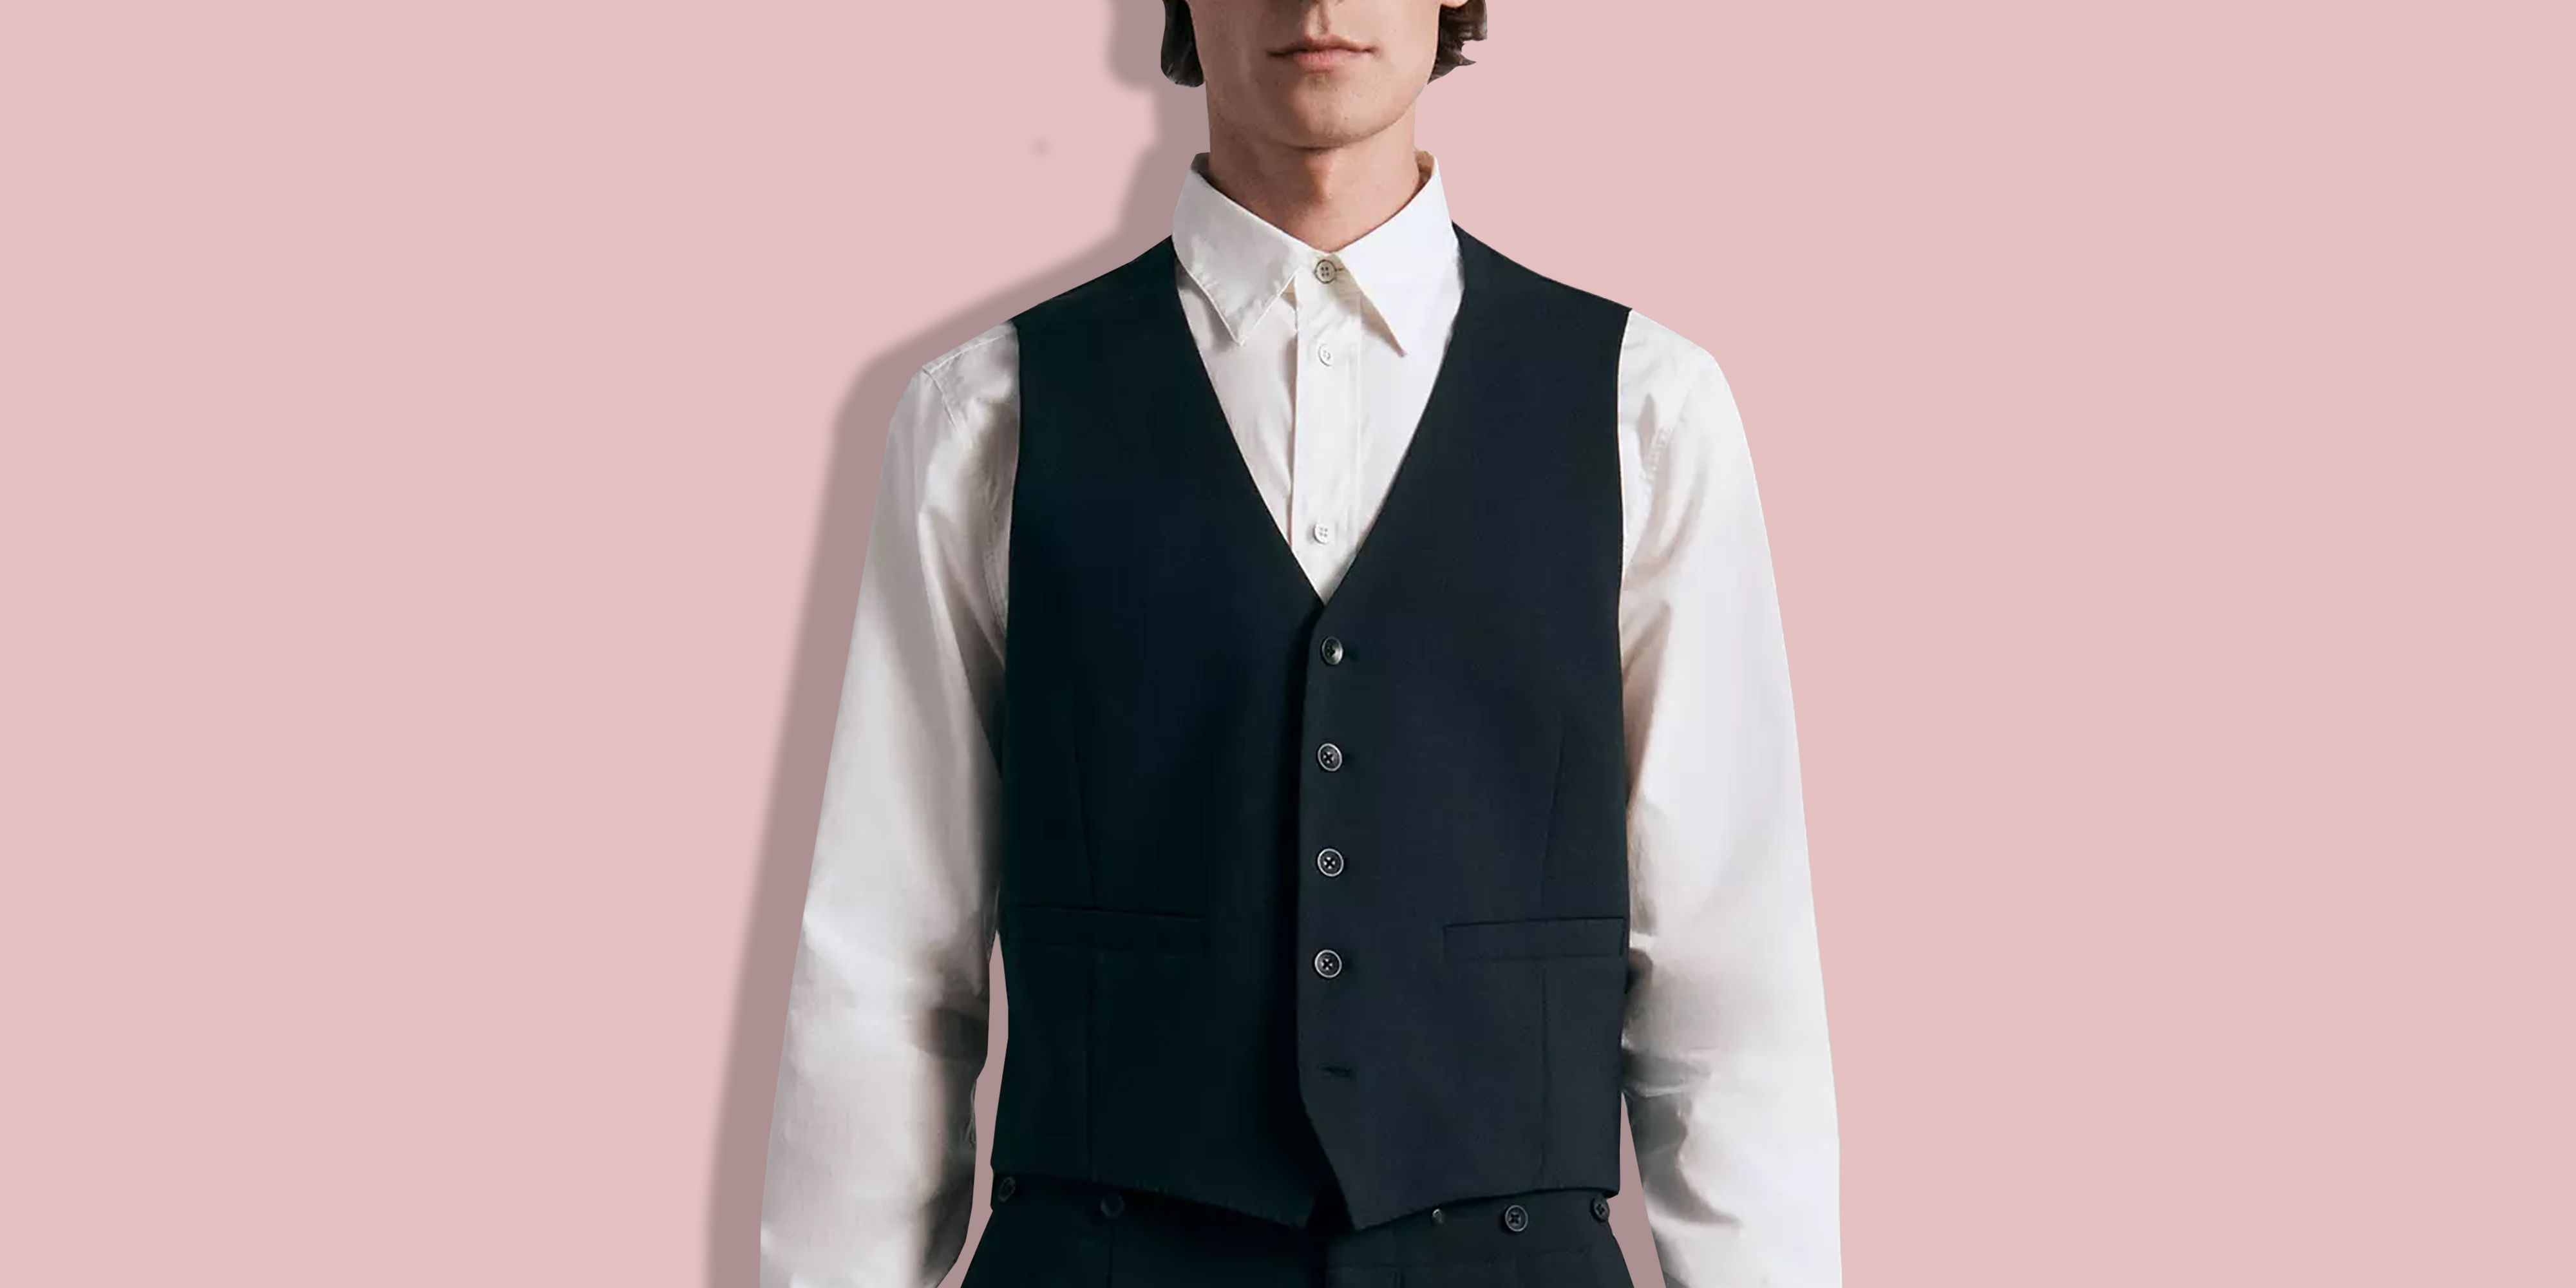 Pt High Quality (blazer+ Waistcoat + Trousers) Men Simple Business Elegant  Fashion Job Interview Gentleman Suit Slim 3-piece Suit | Fruugo NO